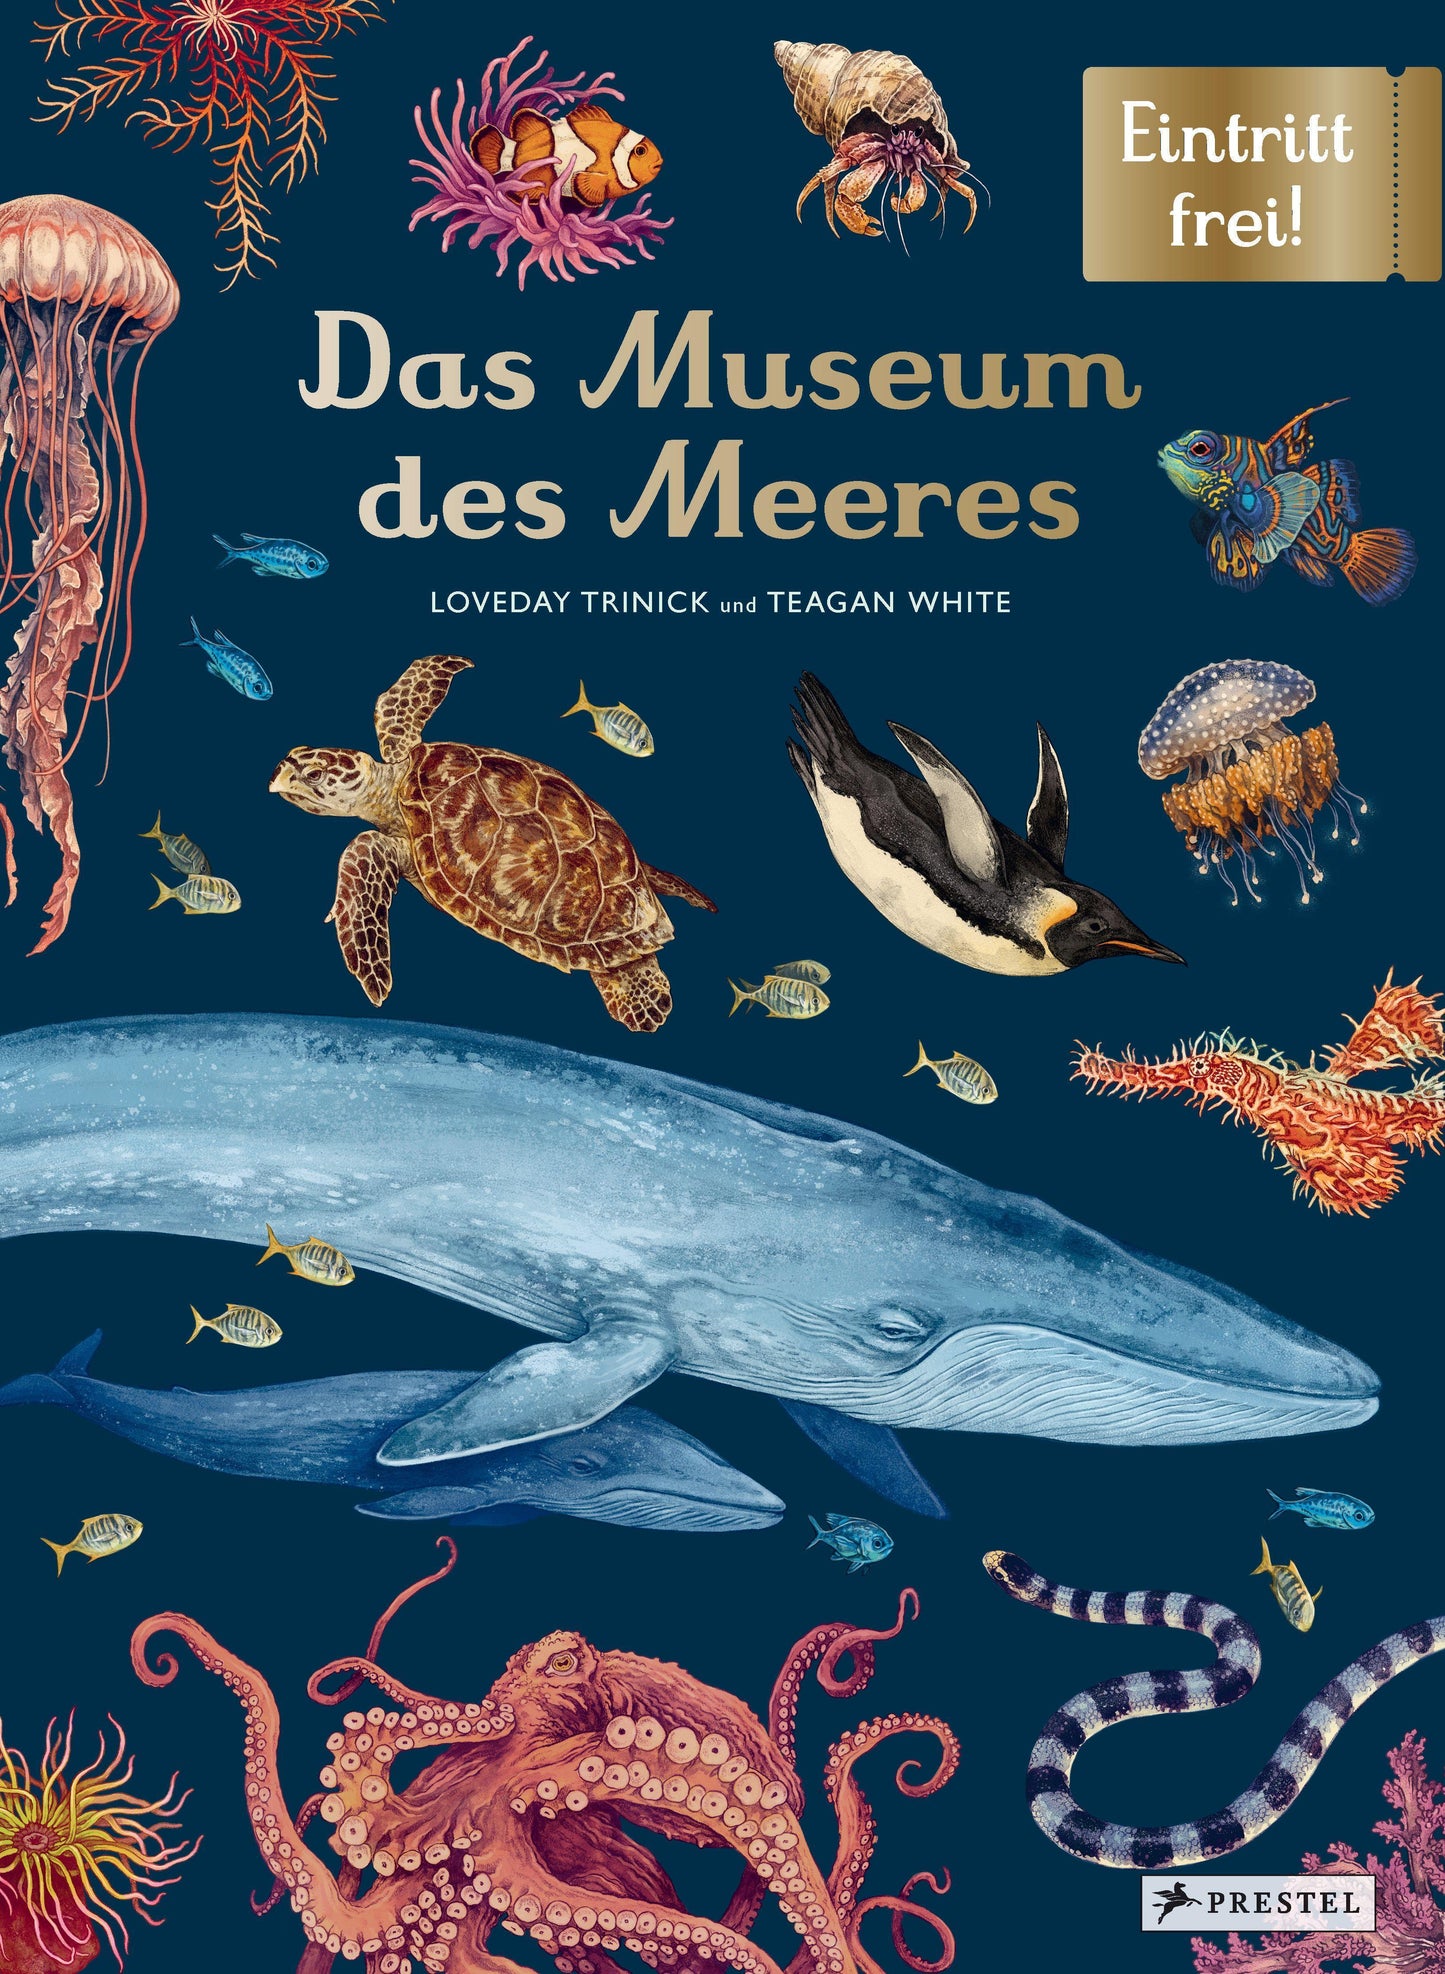 Das Museum des Meeres: Eintritt frei!